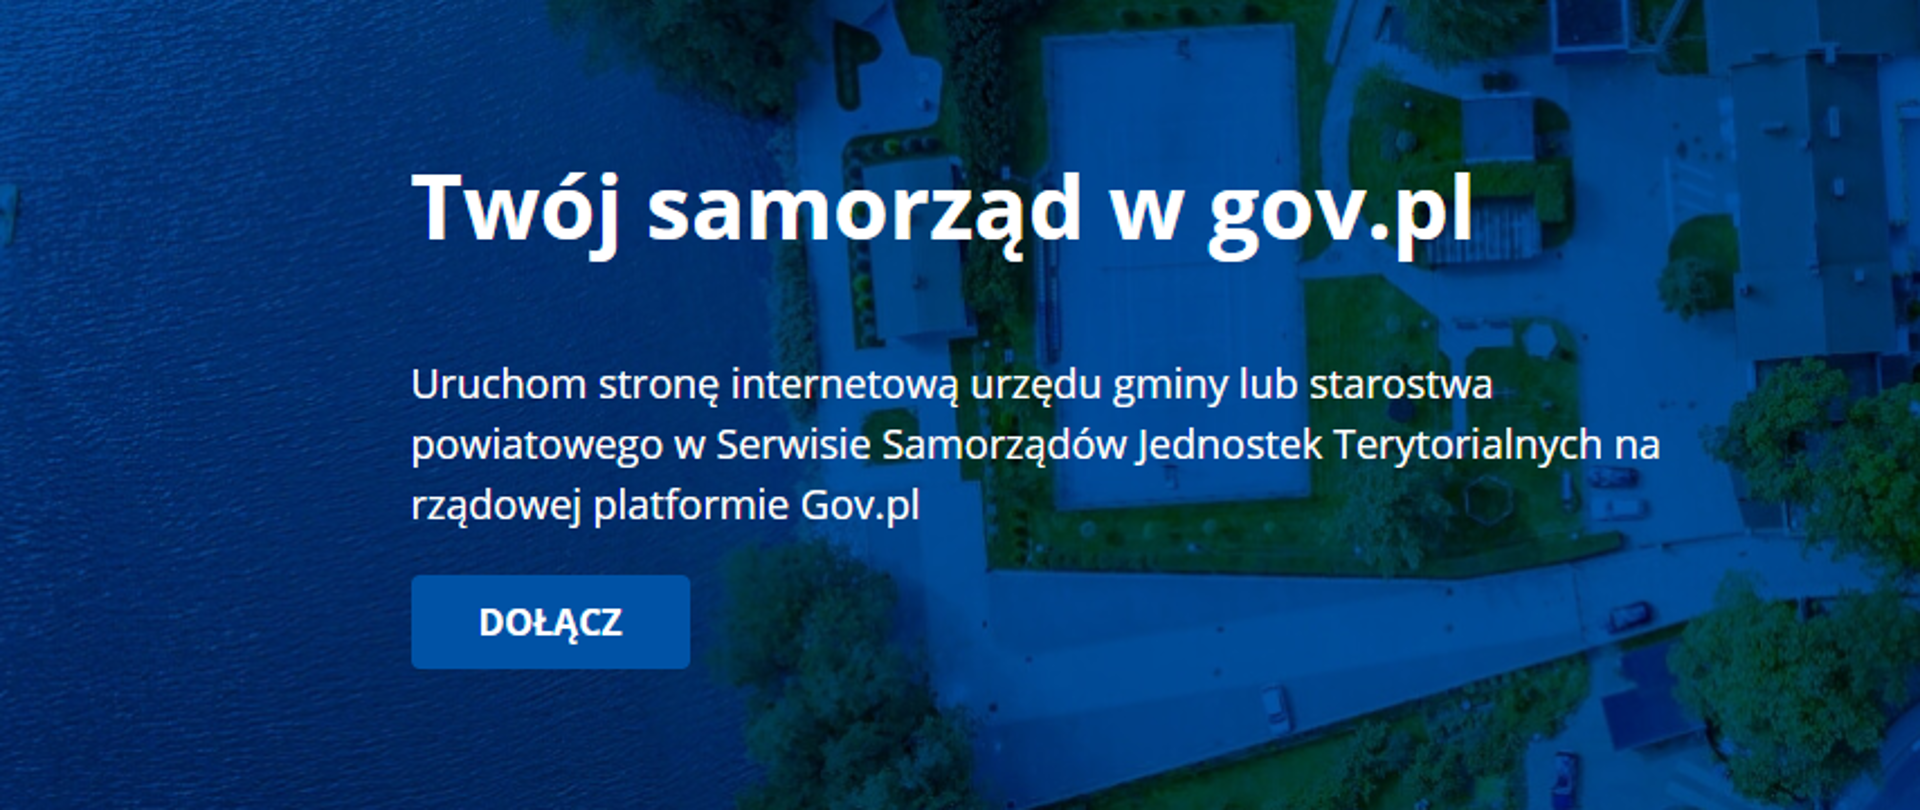 Napis Twój samorząd w gov.pl na niebieskim tle